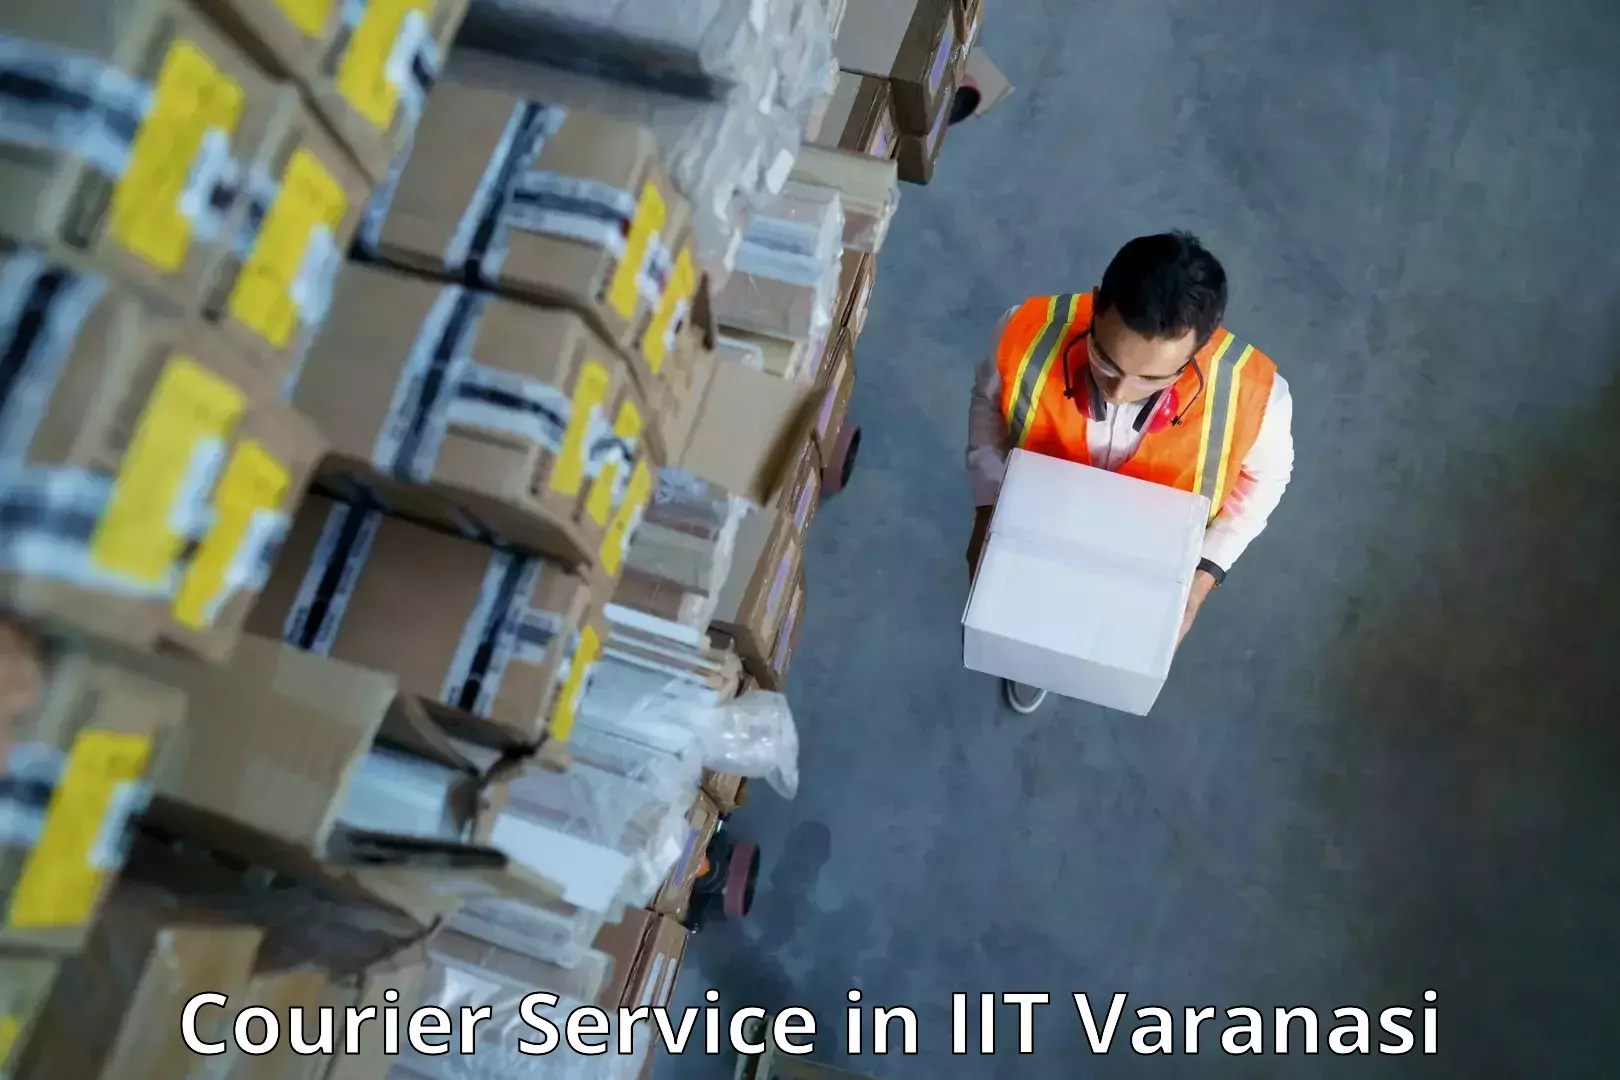 Courier services in IIT Varanasi